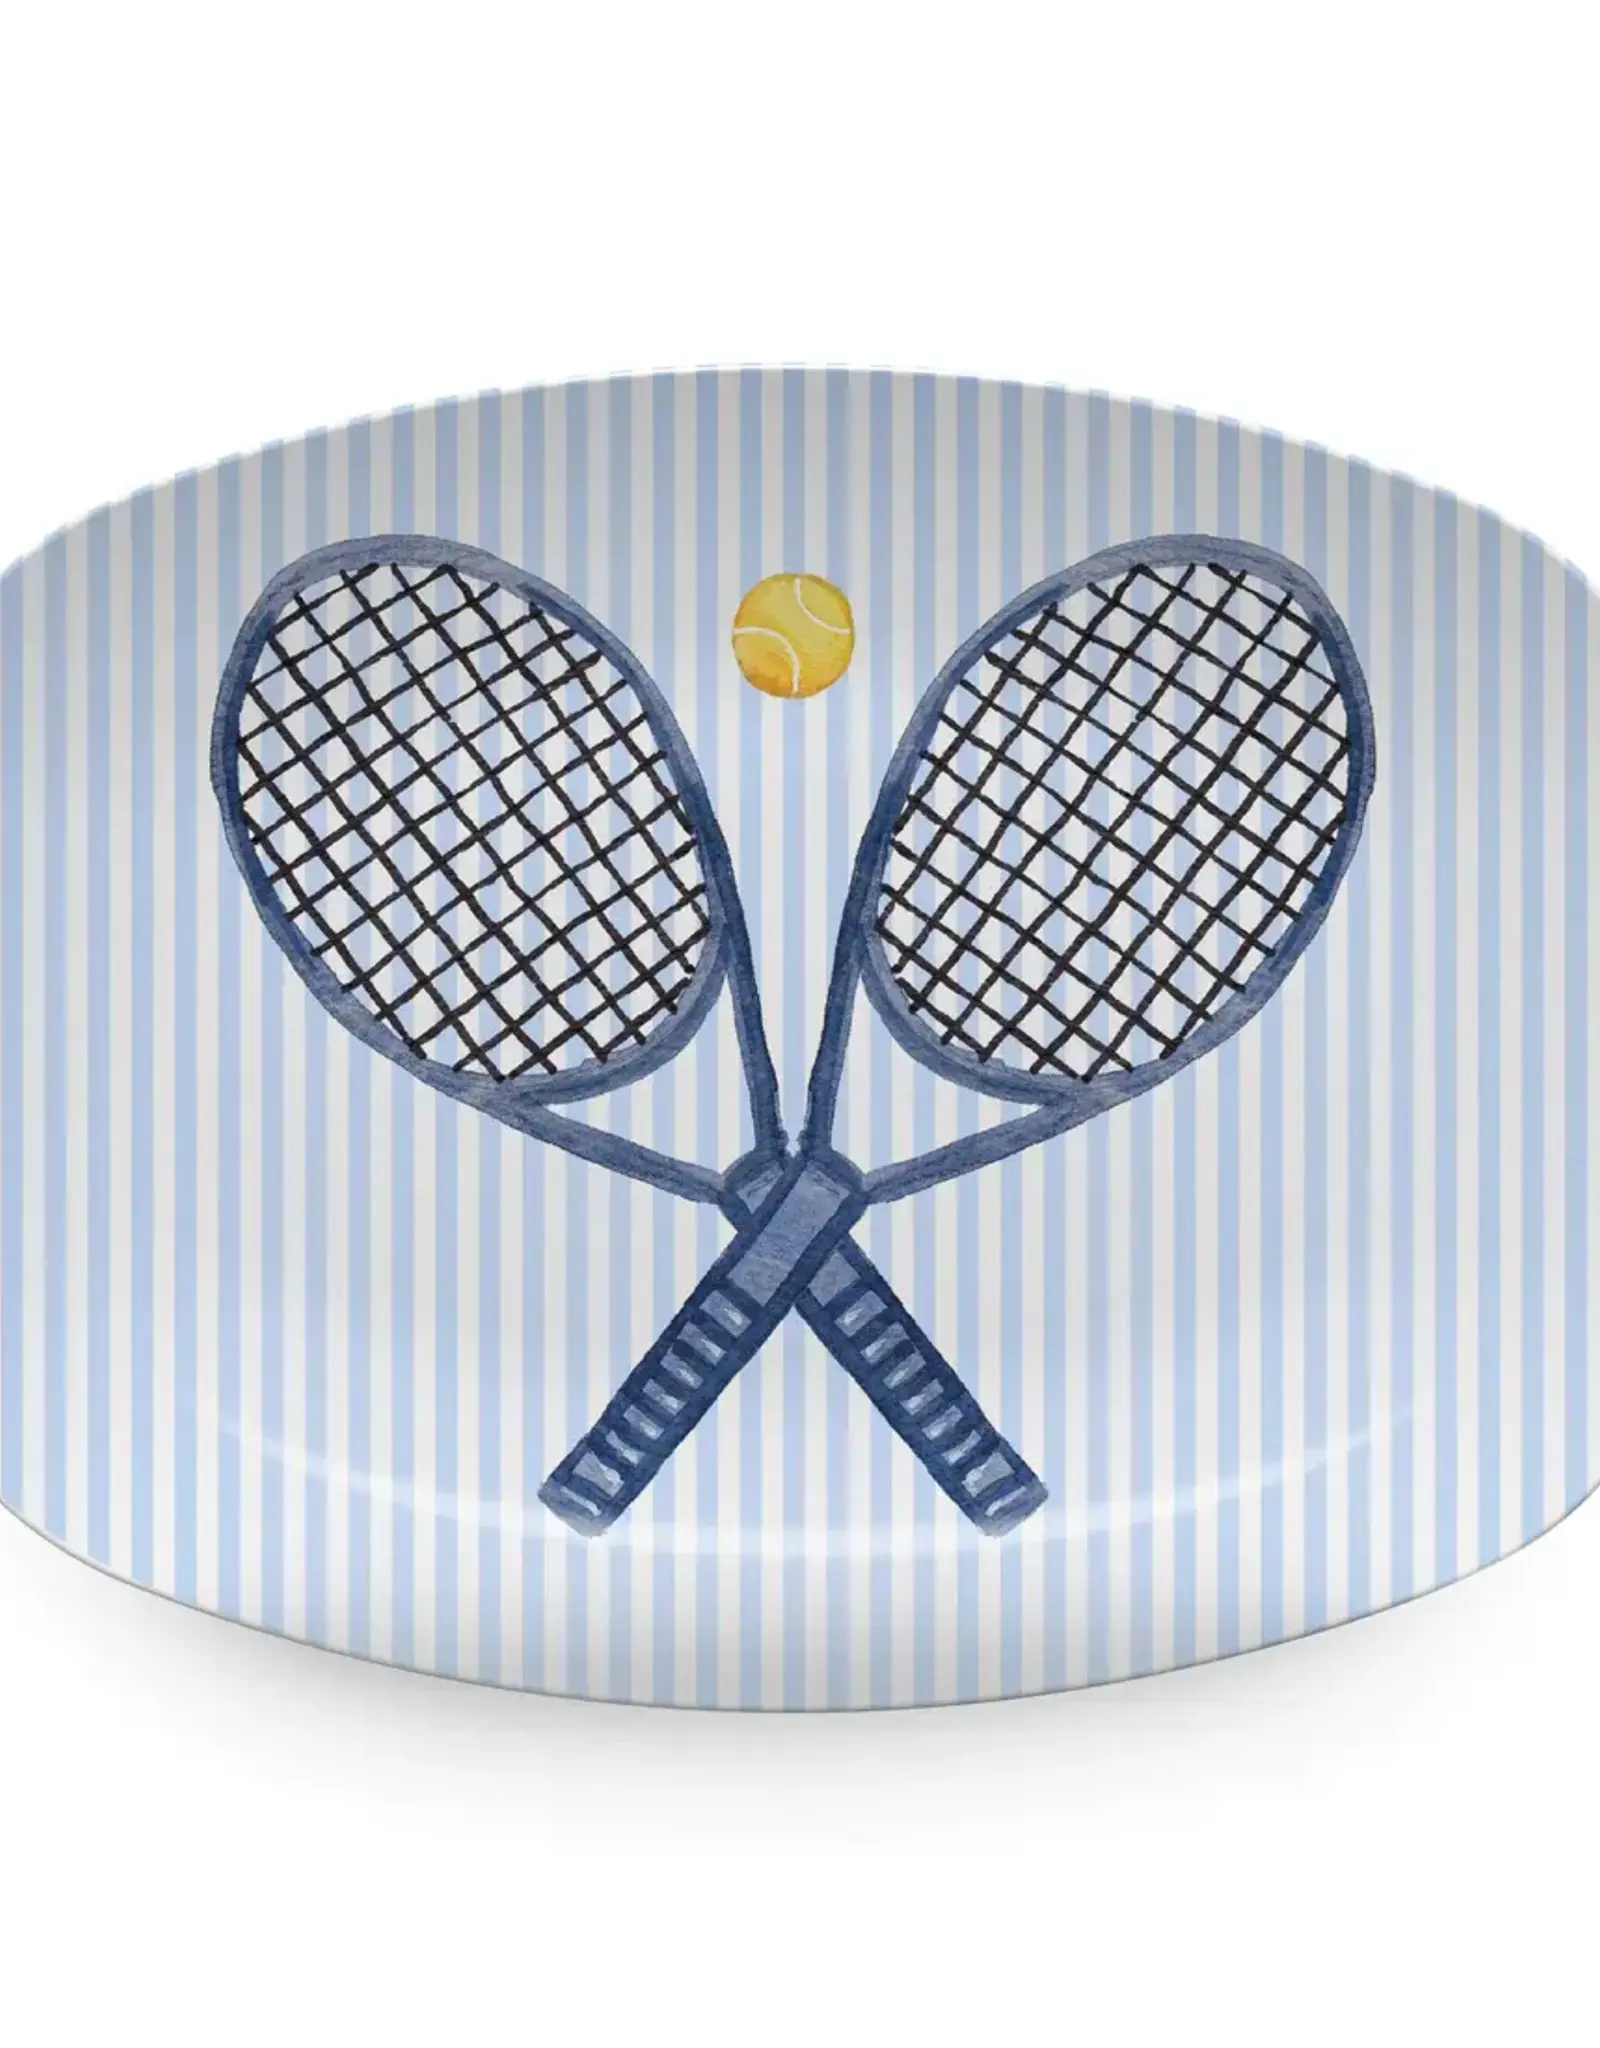 Mariposa What A Racquet Platter